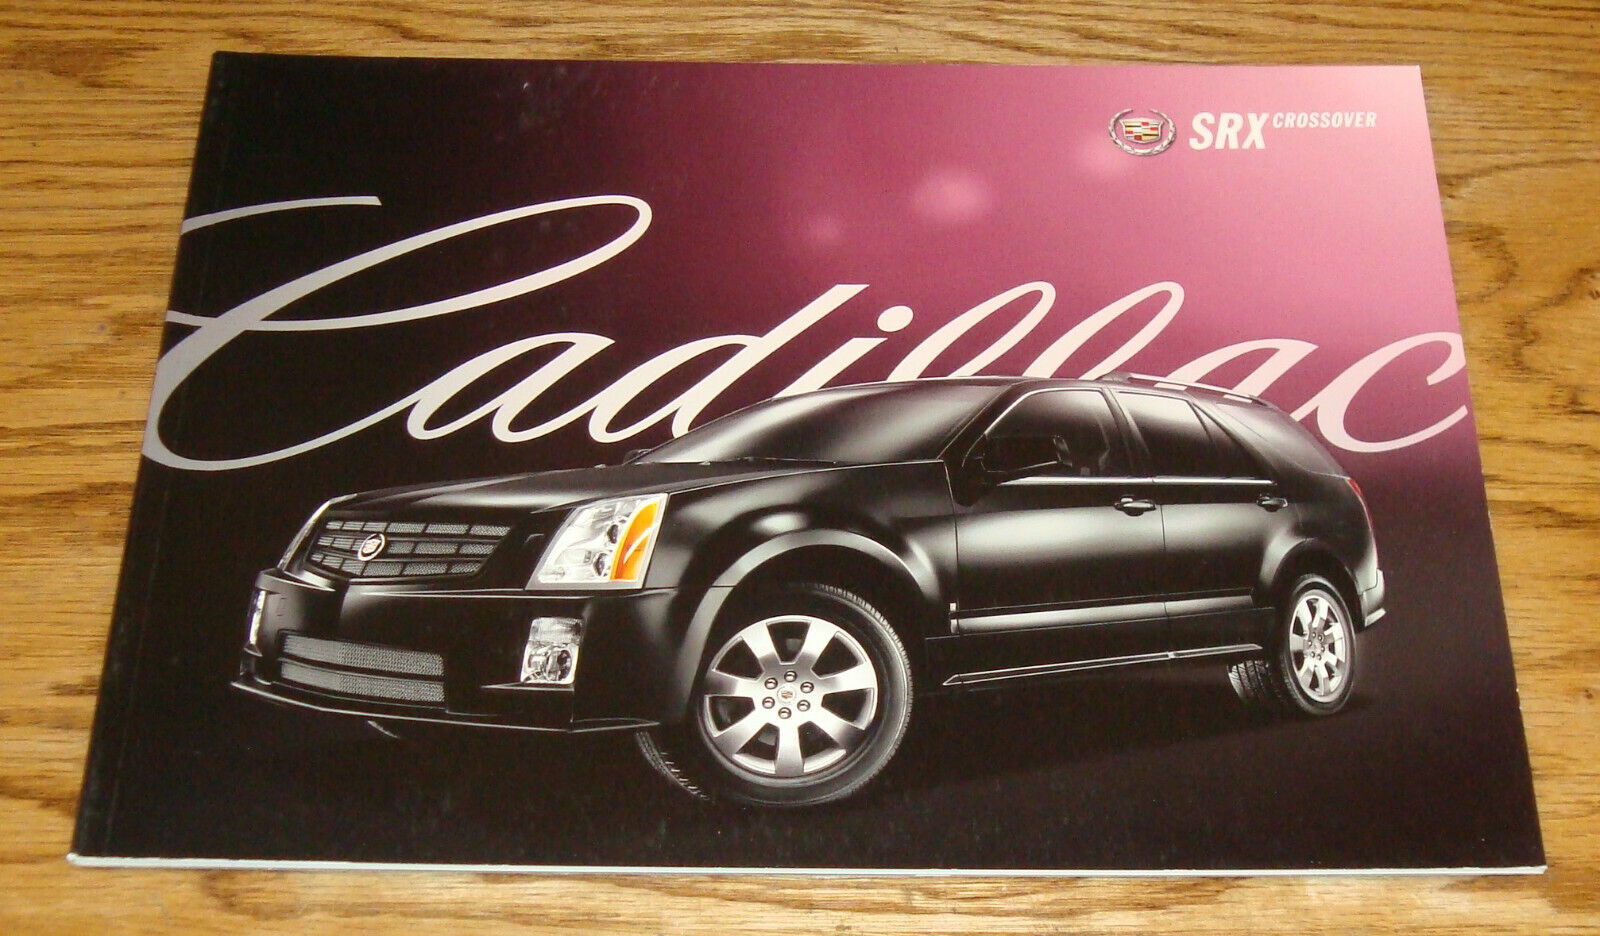 Original 2009 Cadillac SRX Crossover Deluxe Sales Brochure 09